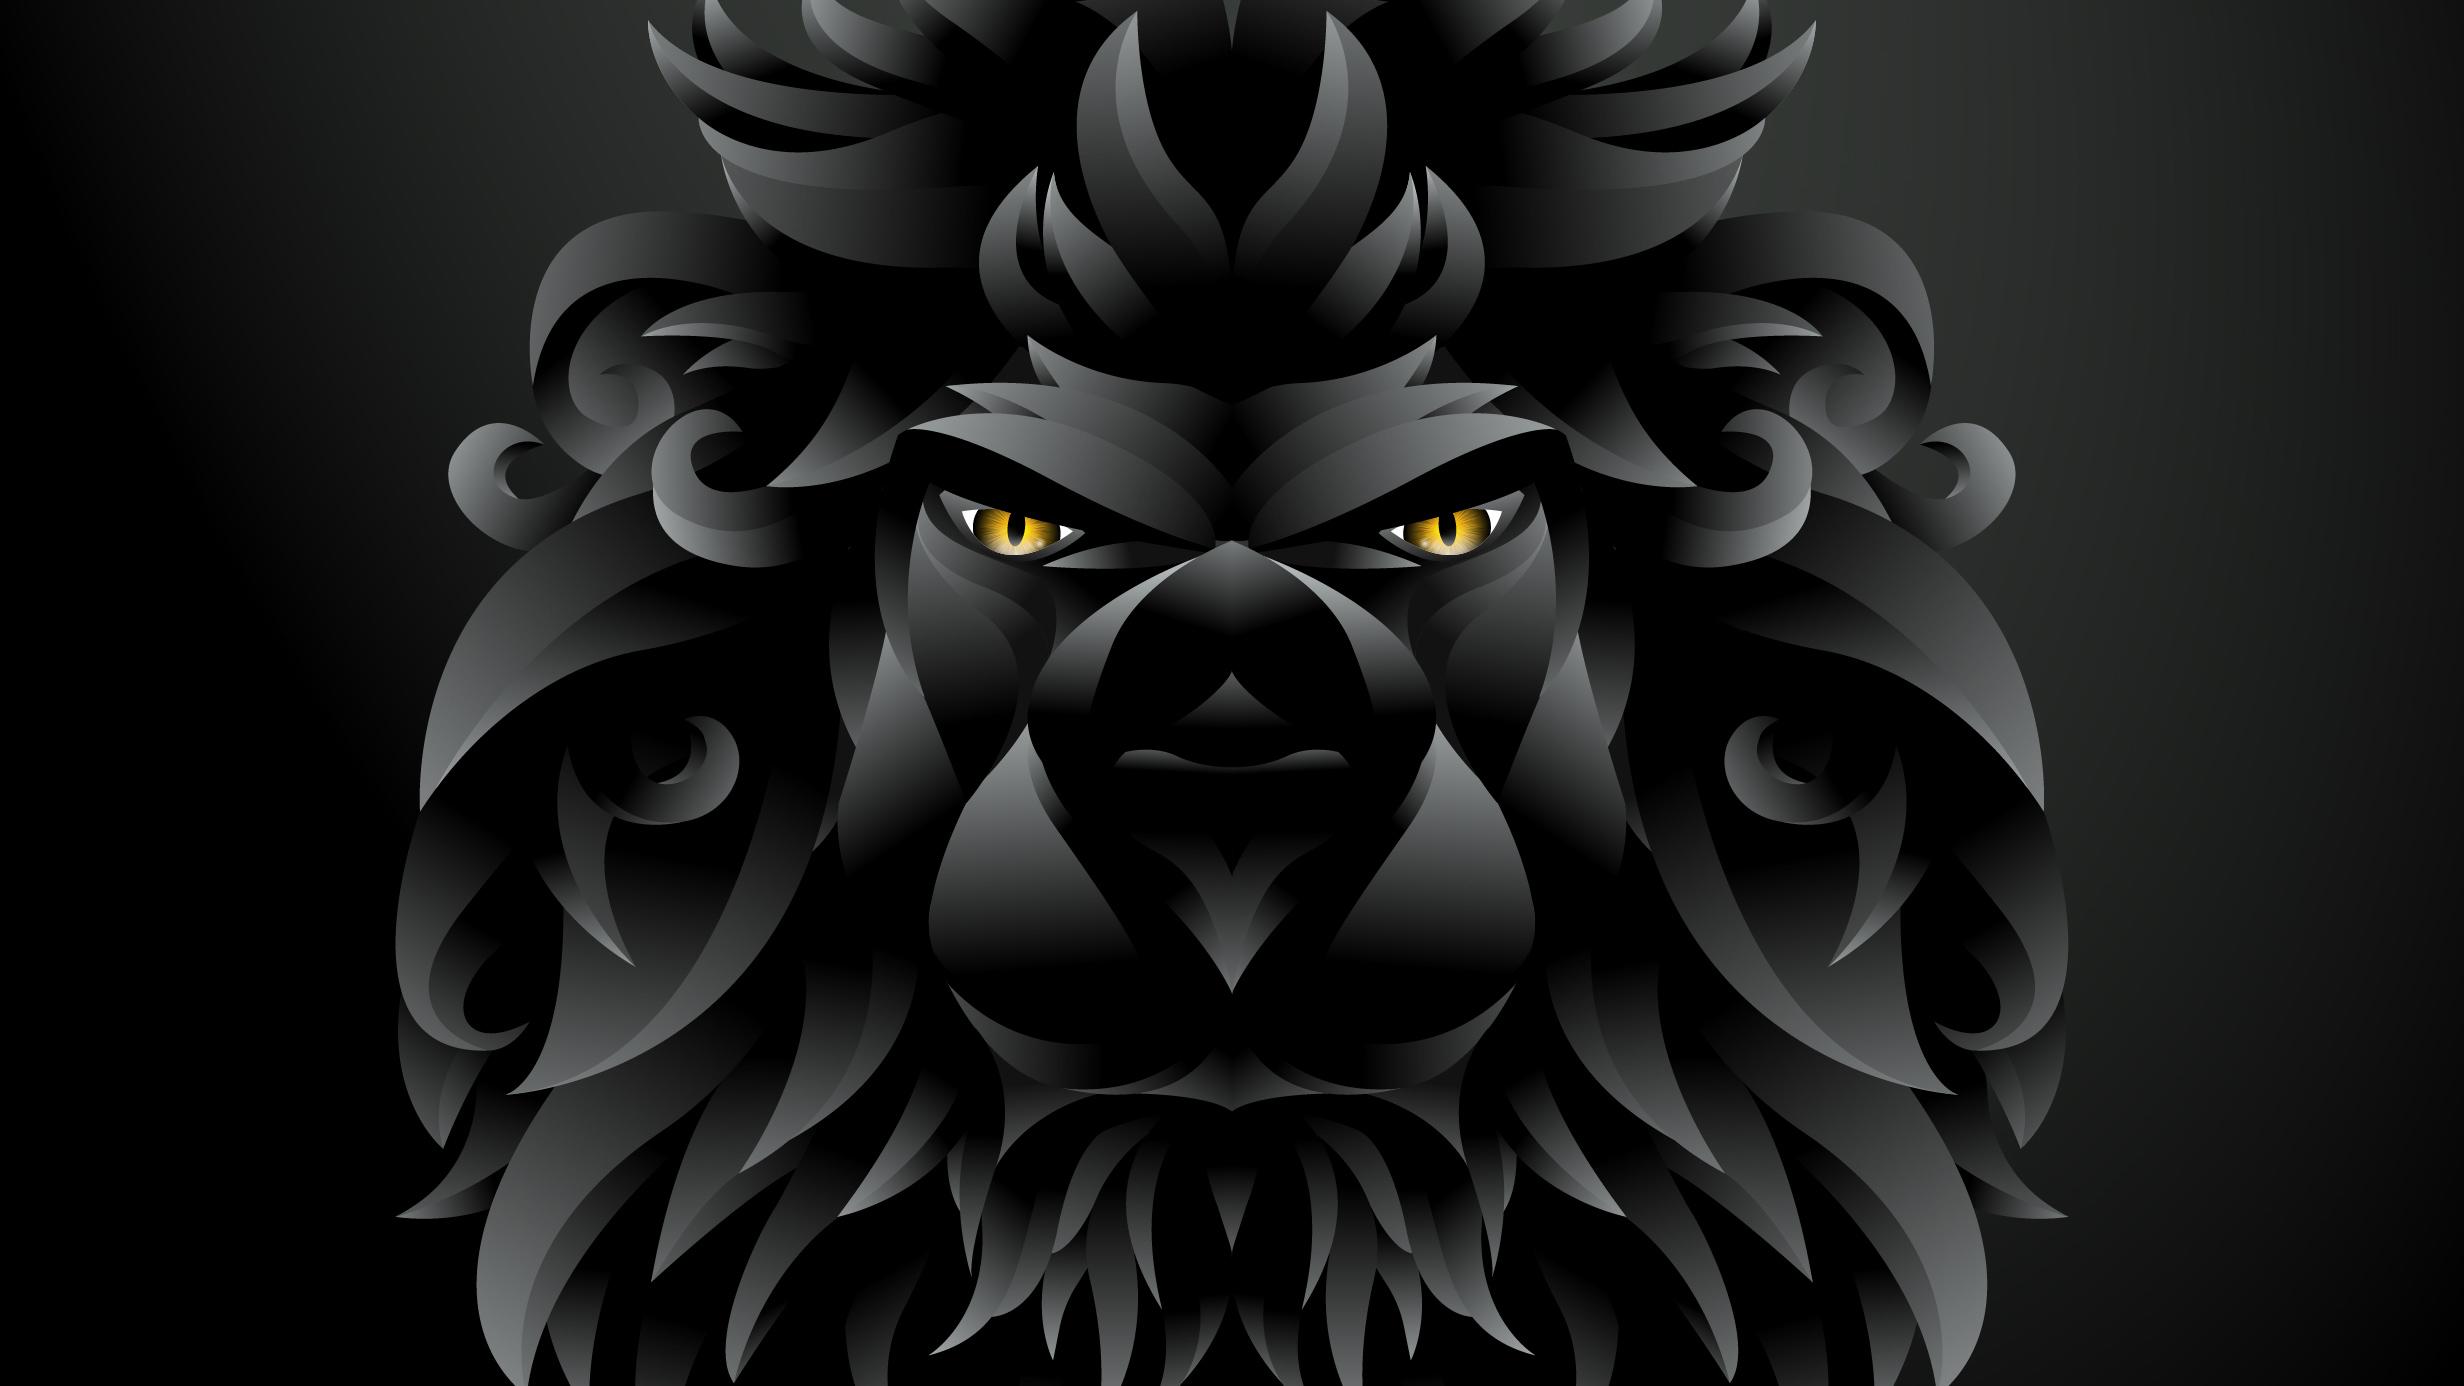 Dark Black Lion Illustration, HD Artist, 4k Wallpaper